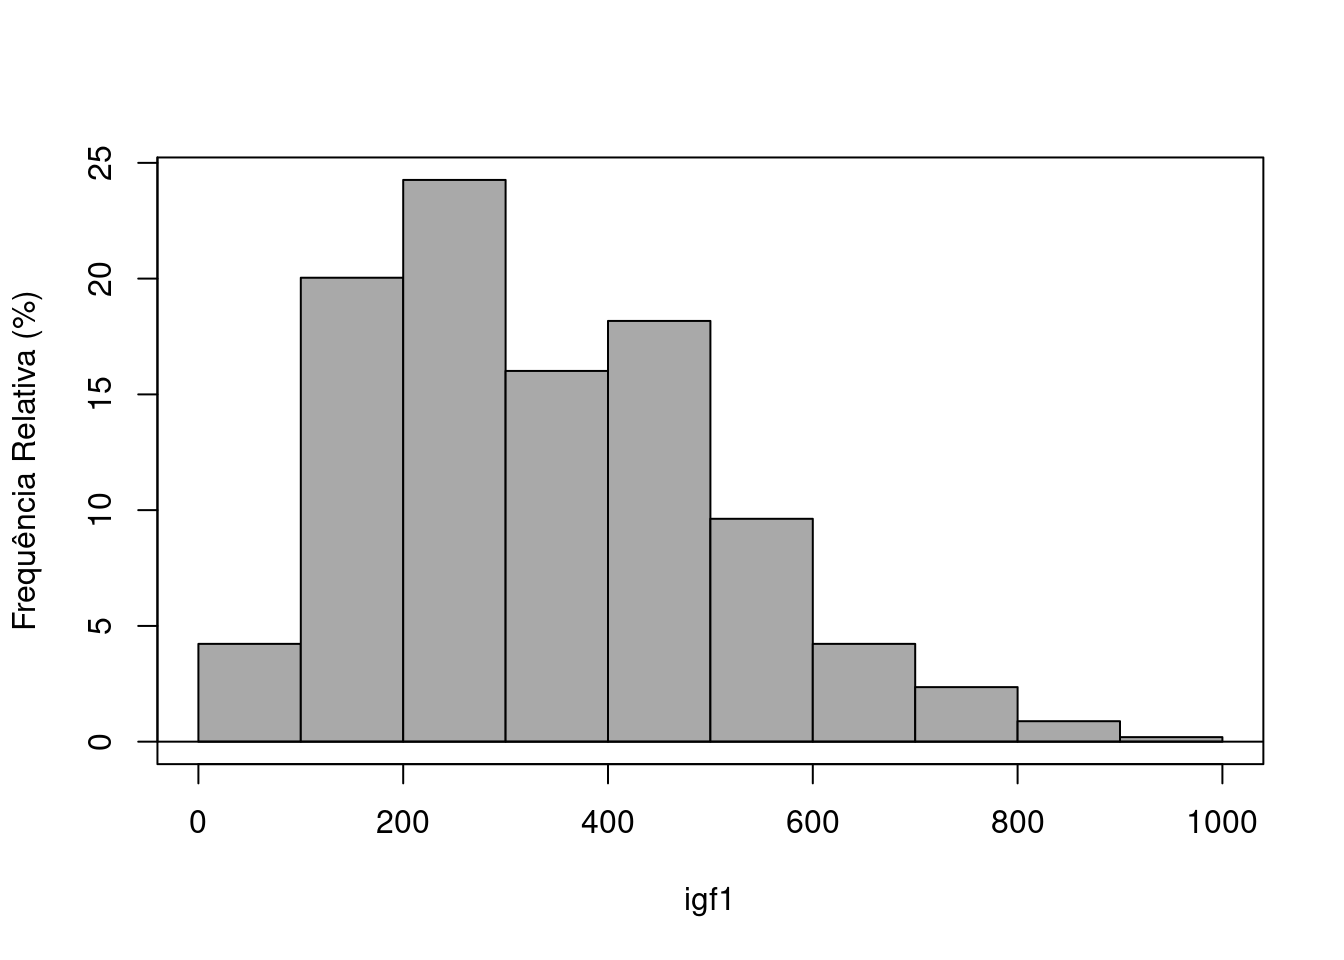 Histograma de frequência relativa da variável igf1.